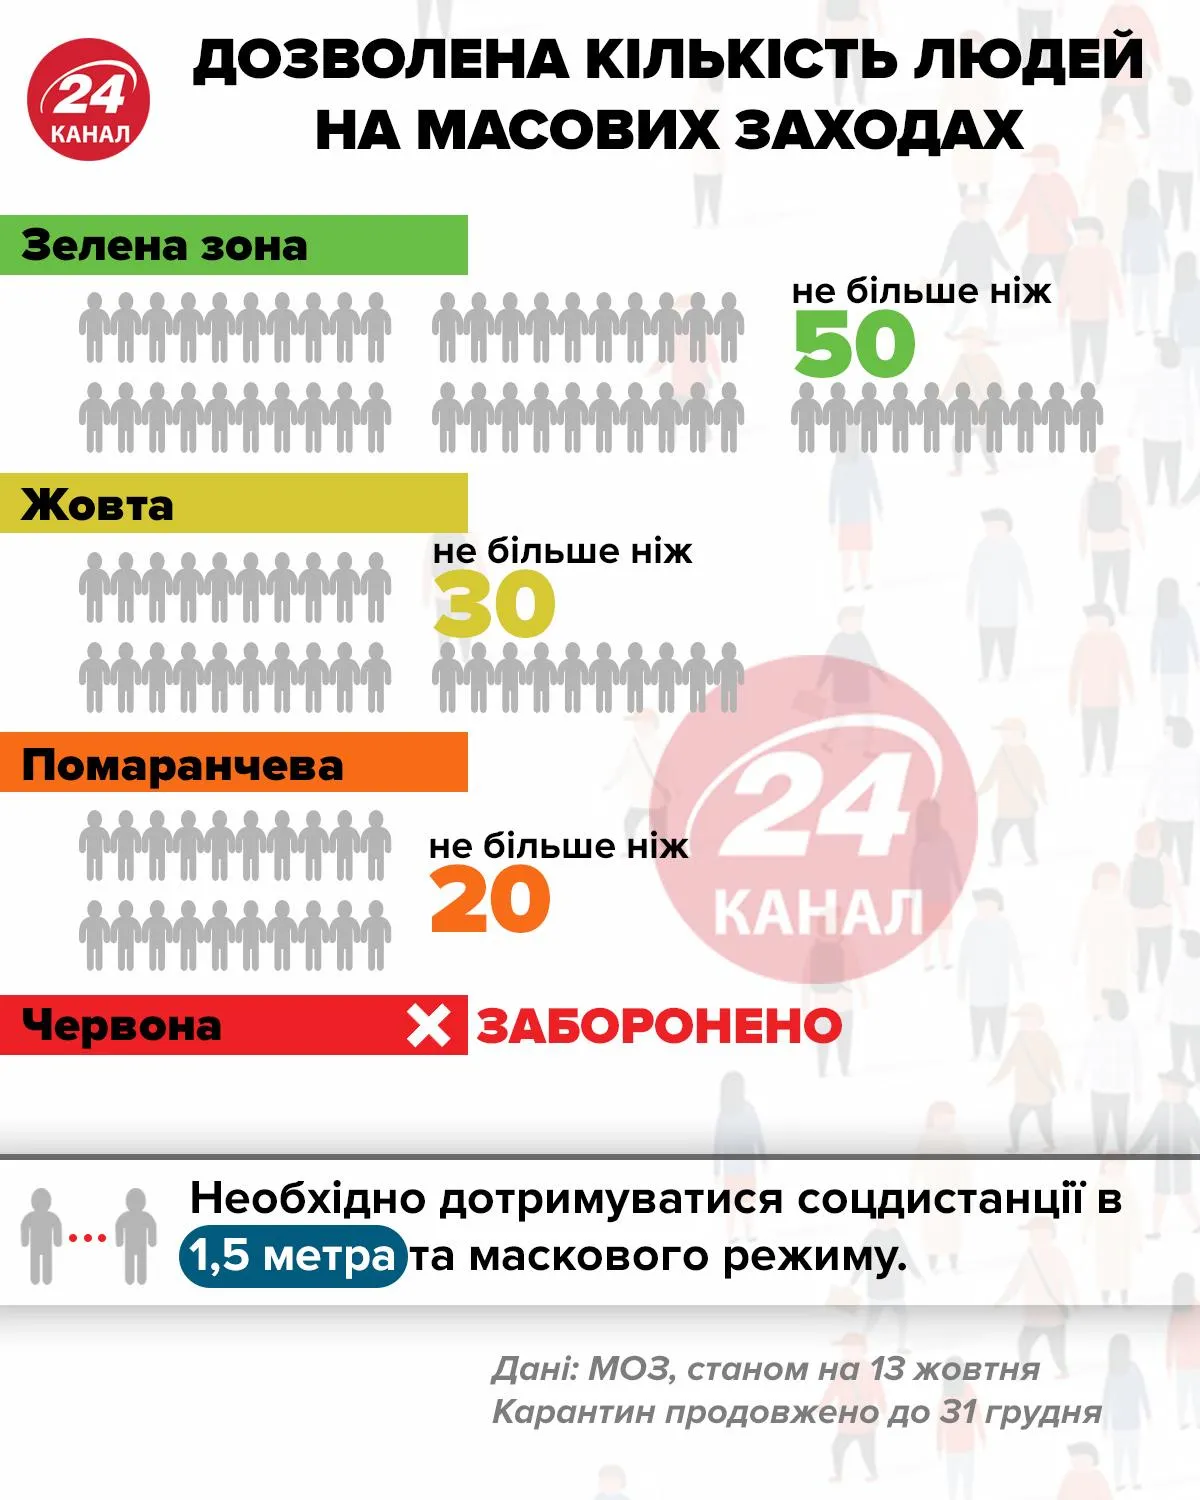 Кількість людей на масових заходах інфографіка 24 канал